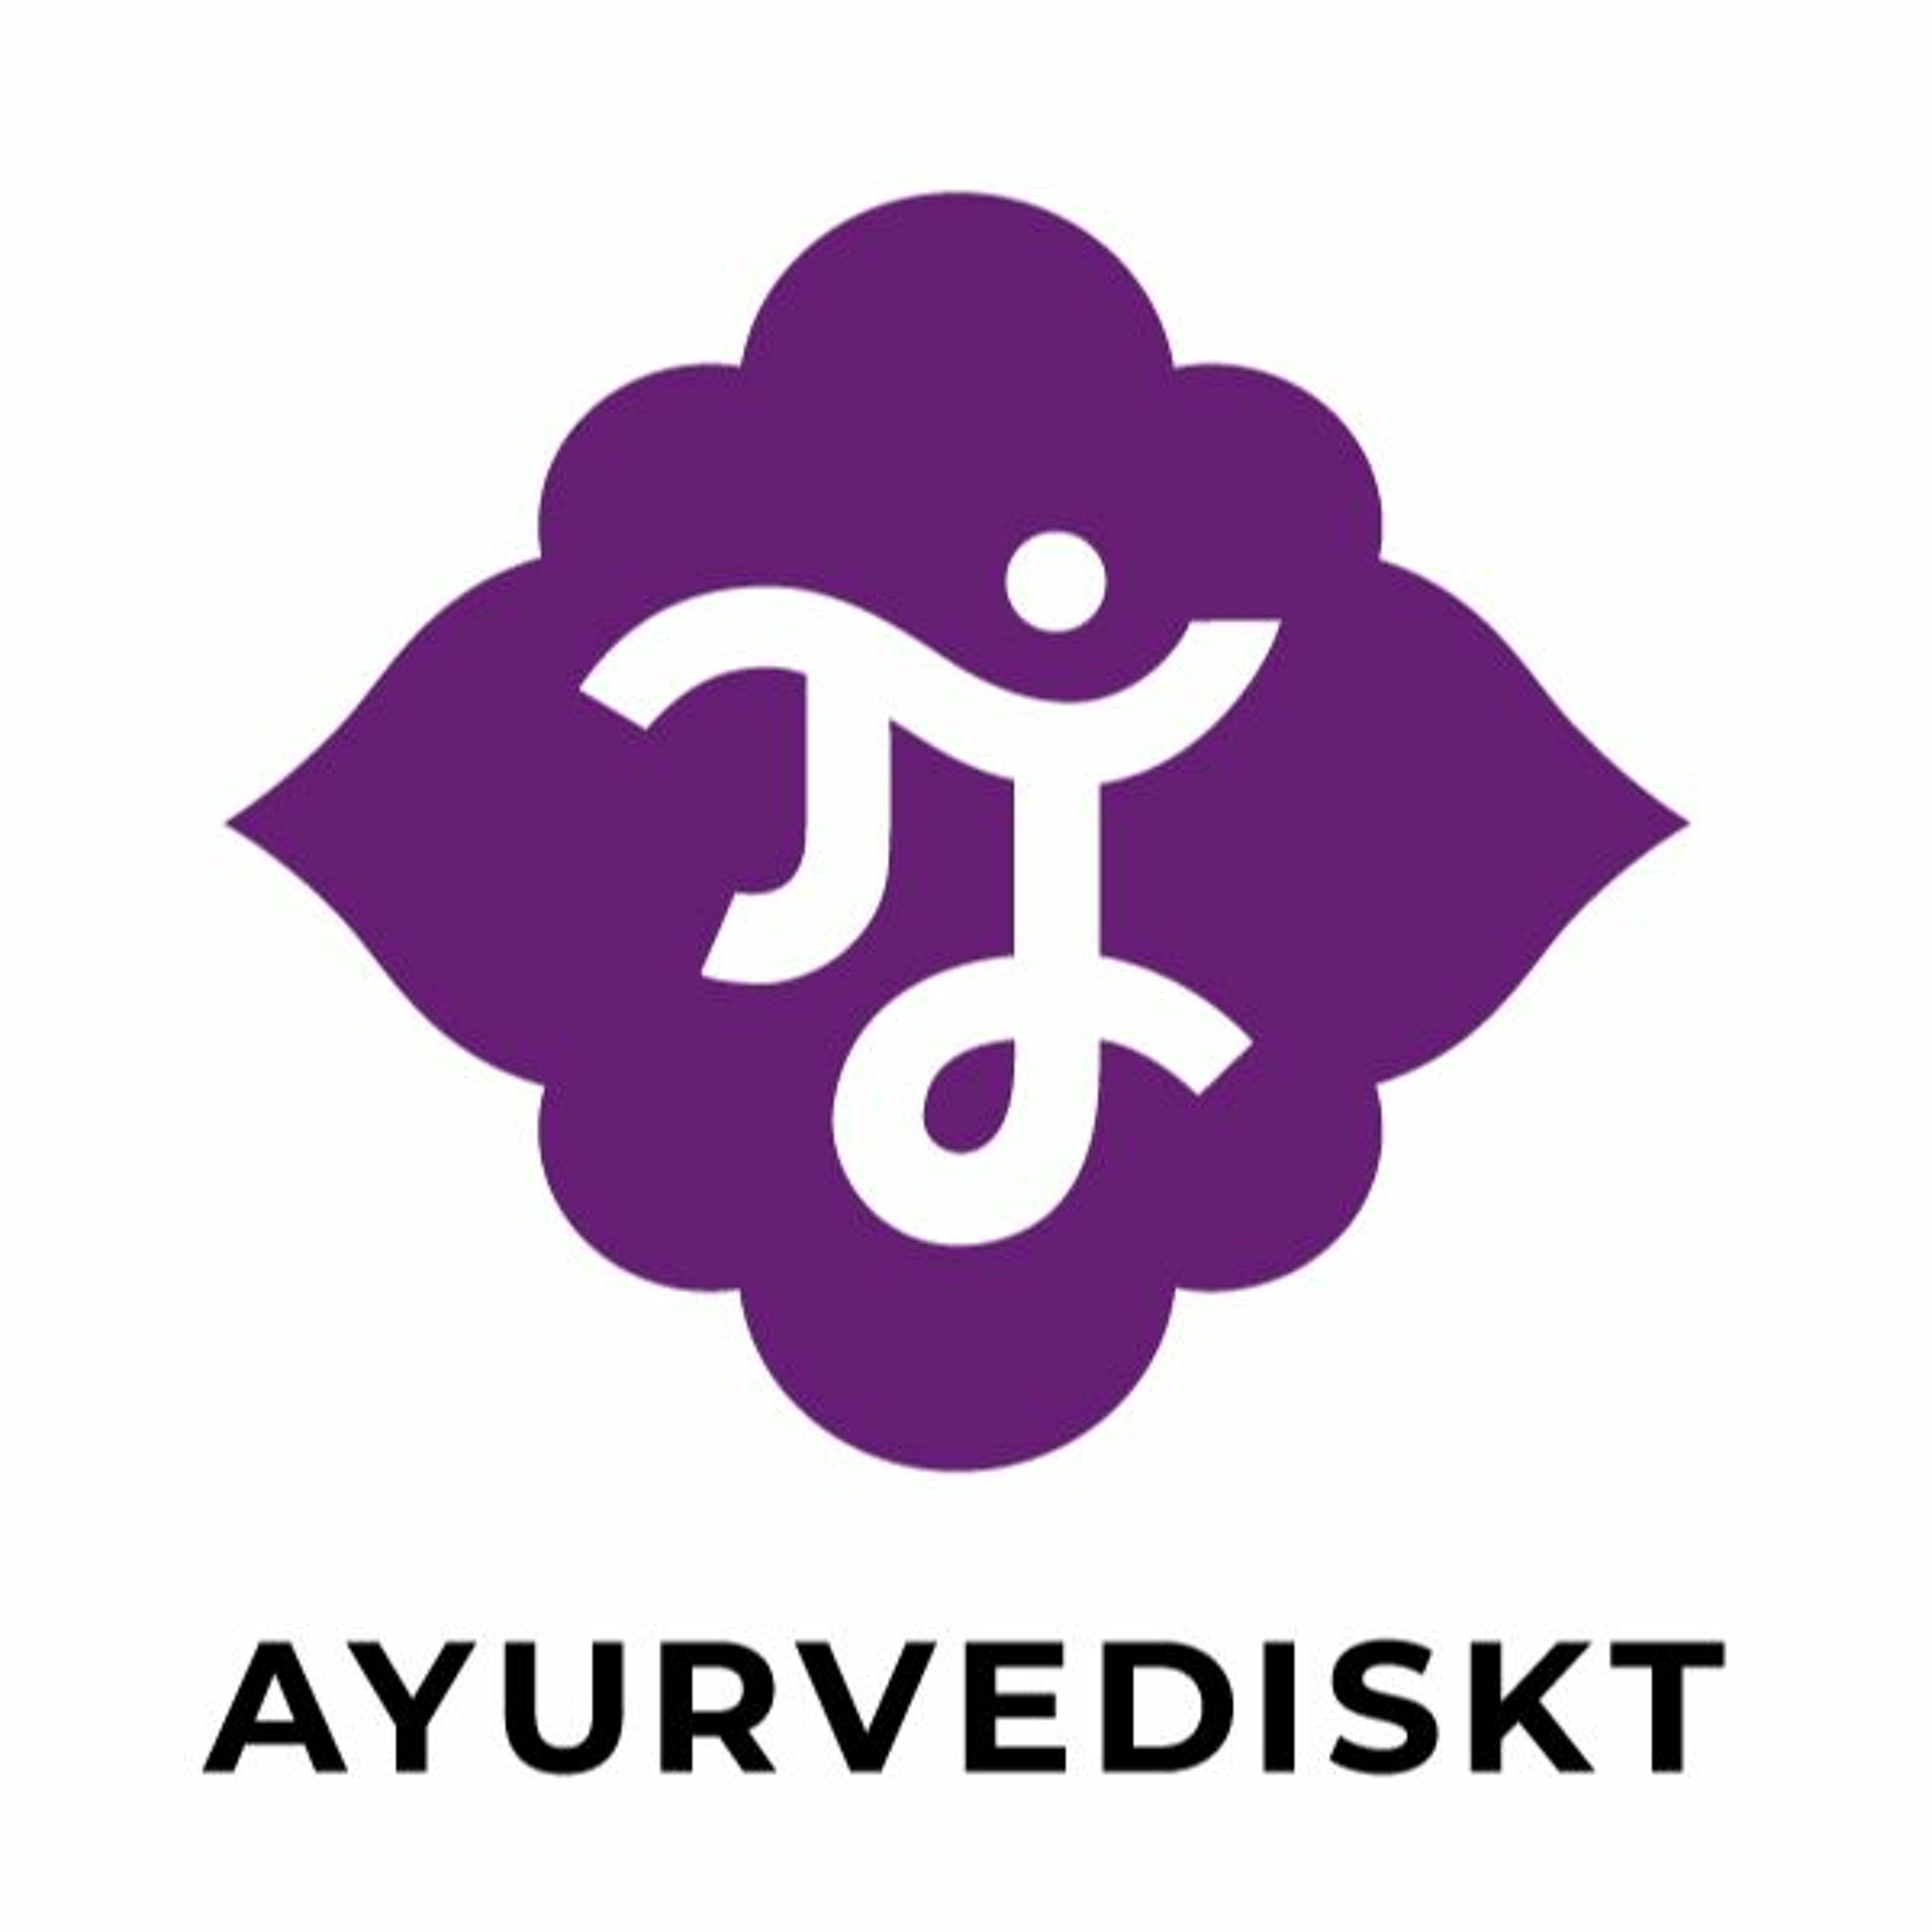 Podden Ayurvediskt avsnitt 13: Dr Vinay Vora - Förebygg corona med ayurveda!